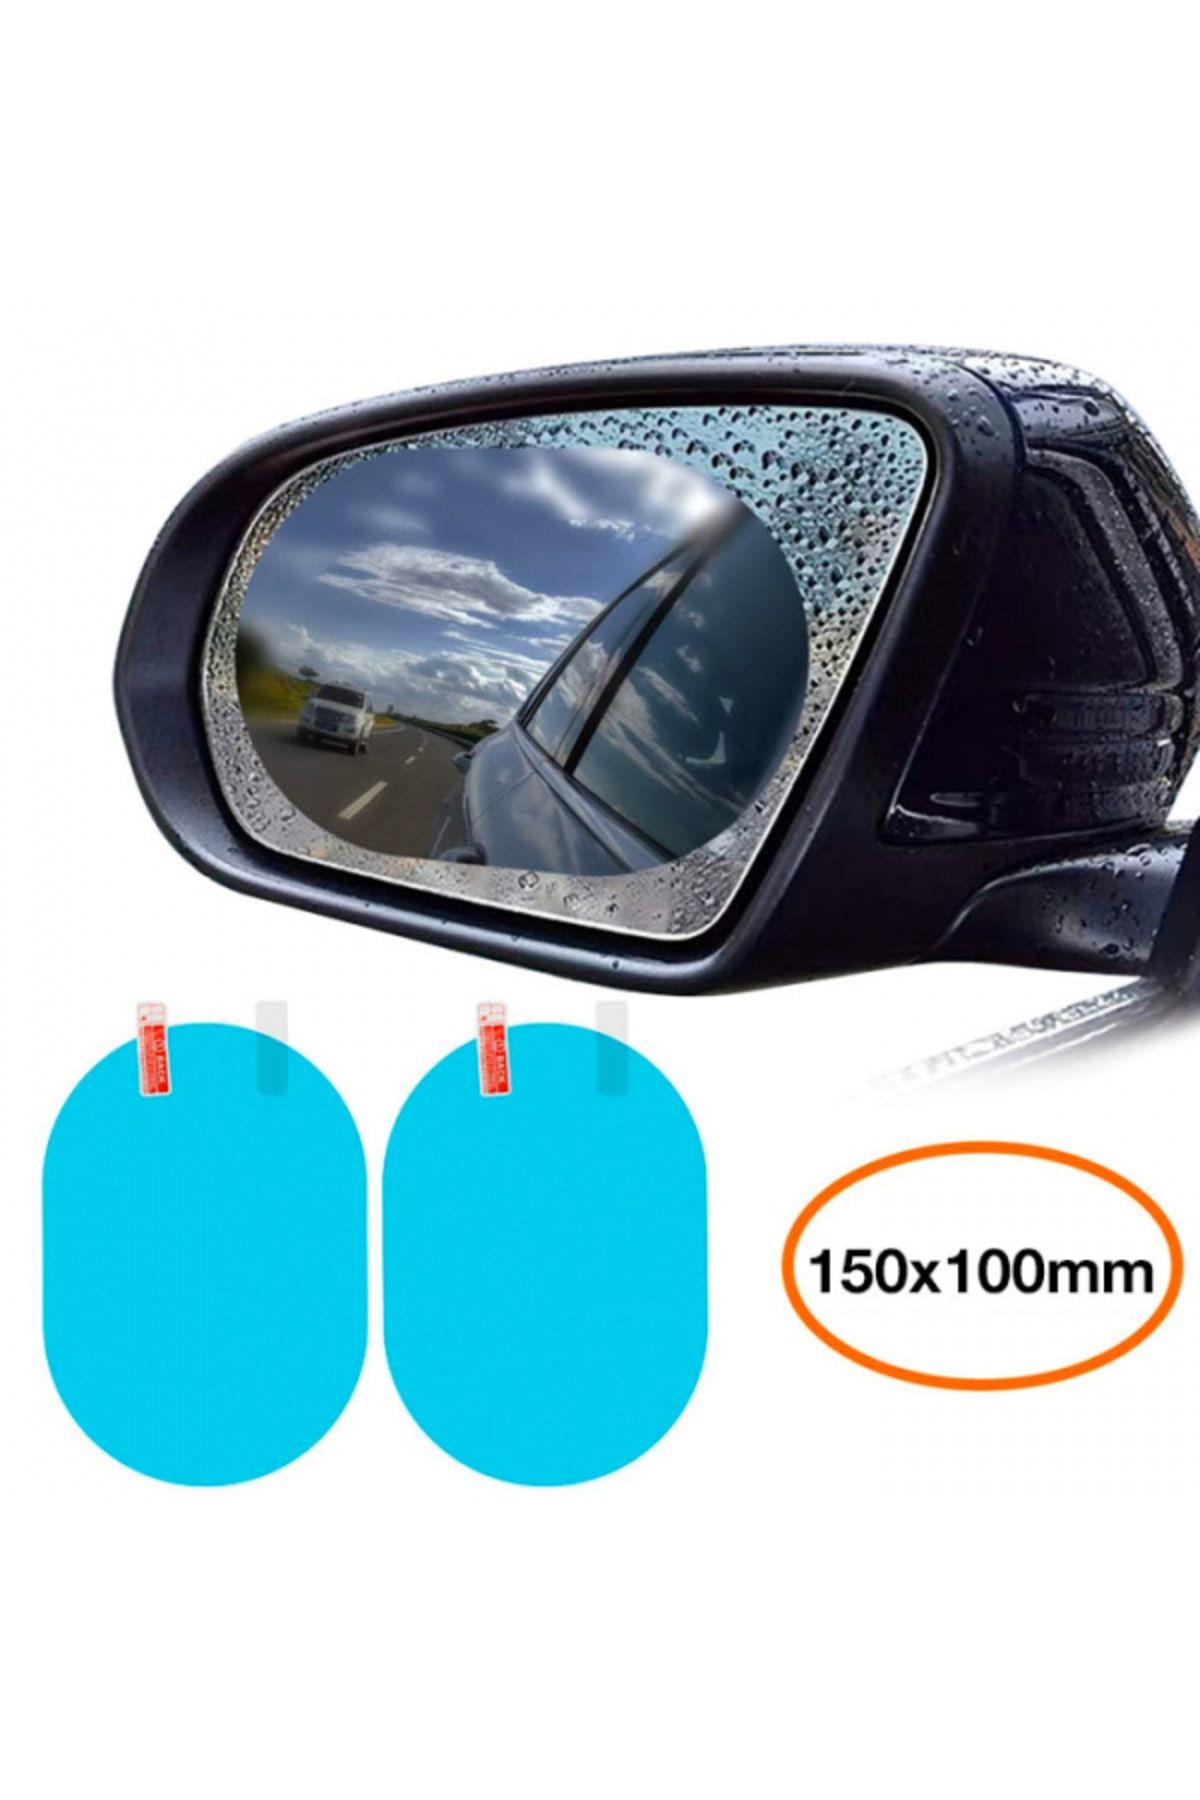 BASEUS ORJİNAL Baseus 150x100mm Araç Oto Yan Dikiz Ayna Yağmur Su Kaydırıcı Sis Önleyici Film 2 Adet Set